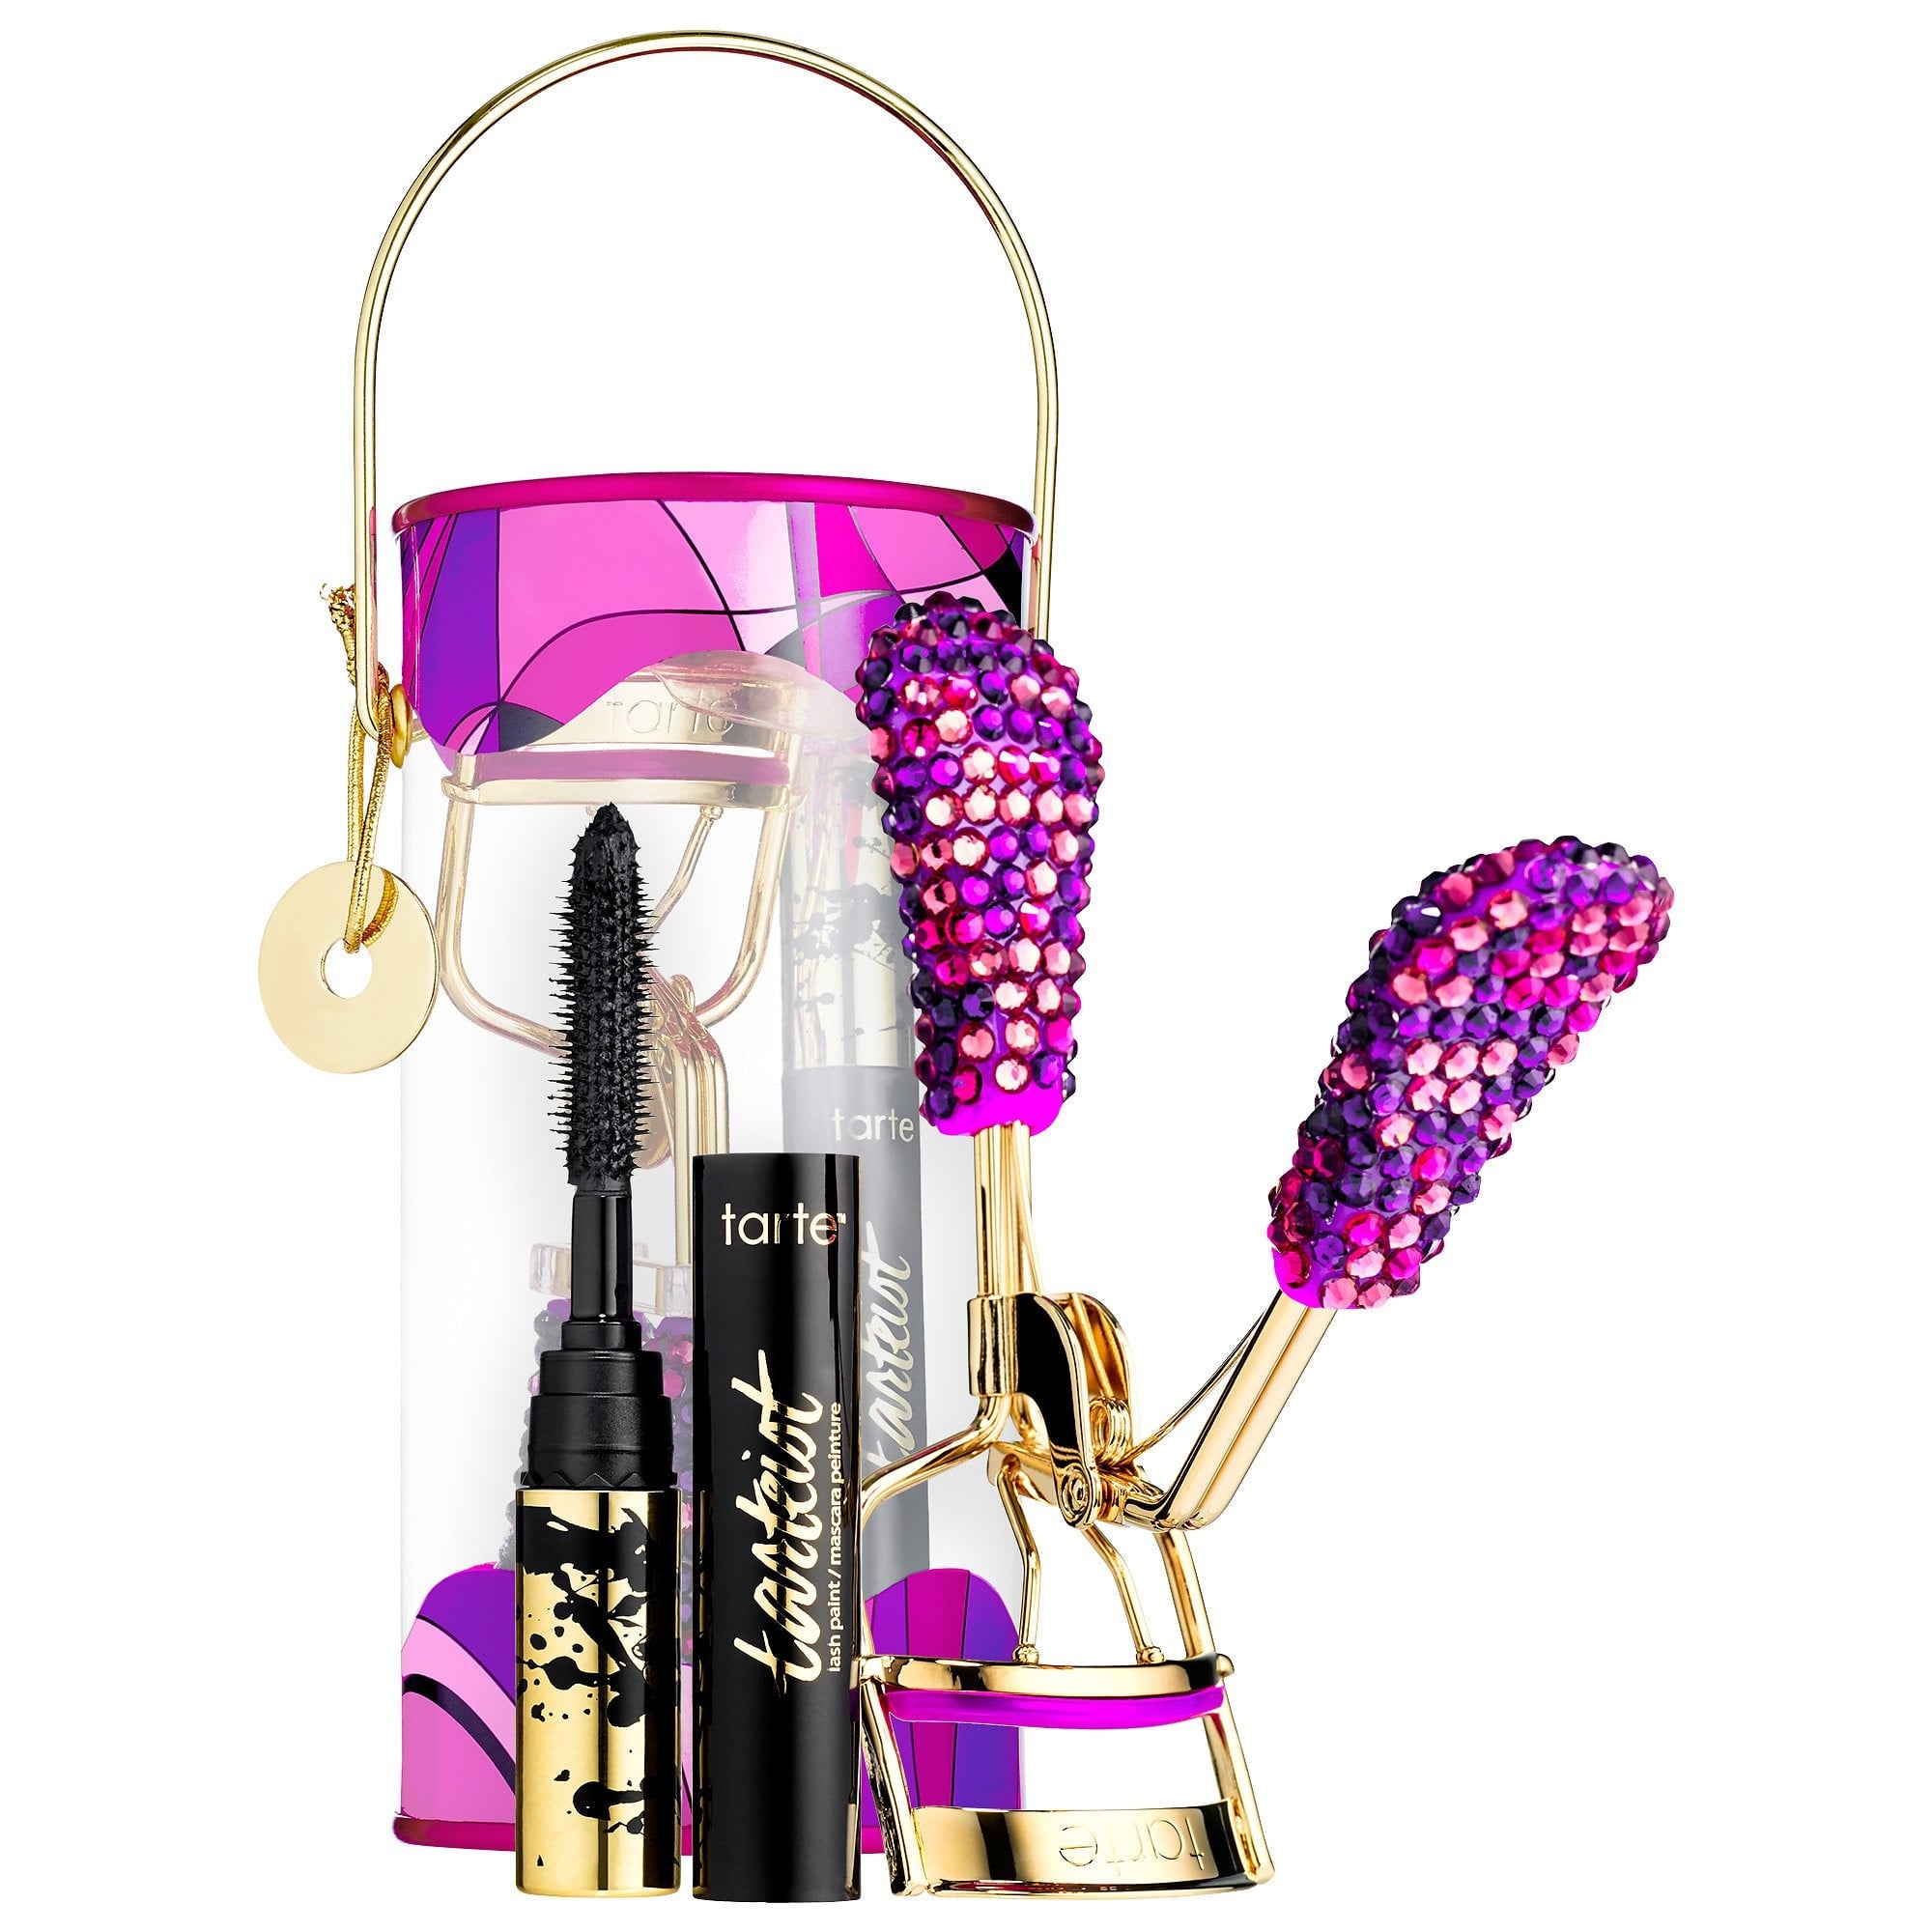 Shiseido Limited Edition Holiday Eyelash Curler